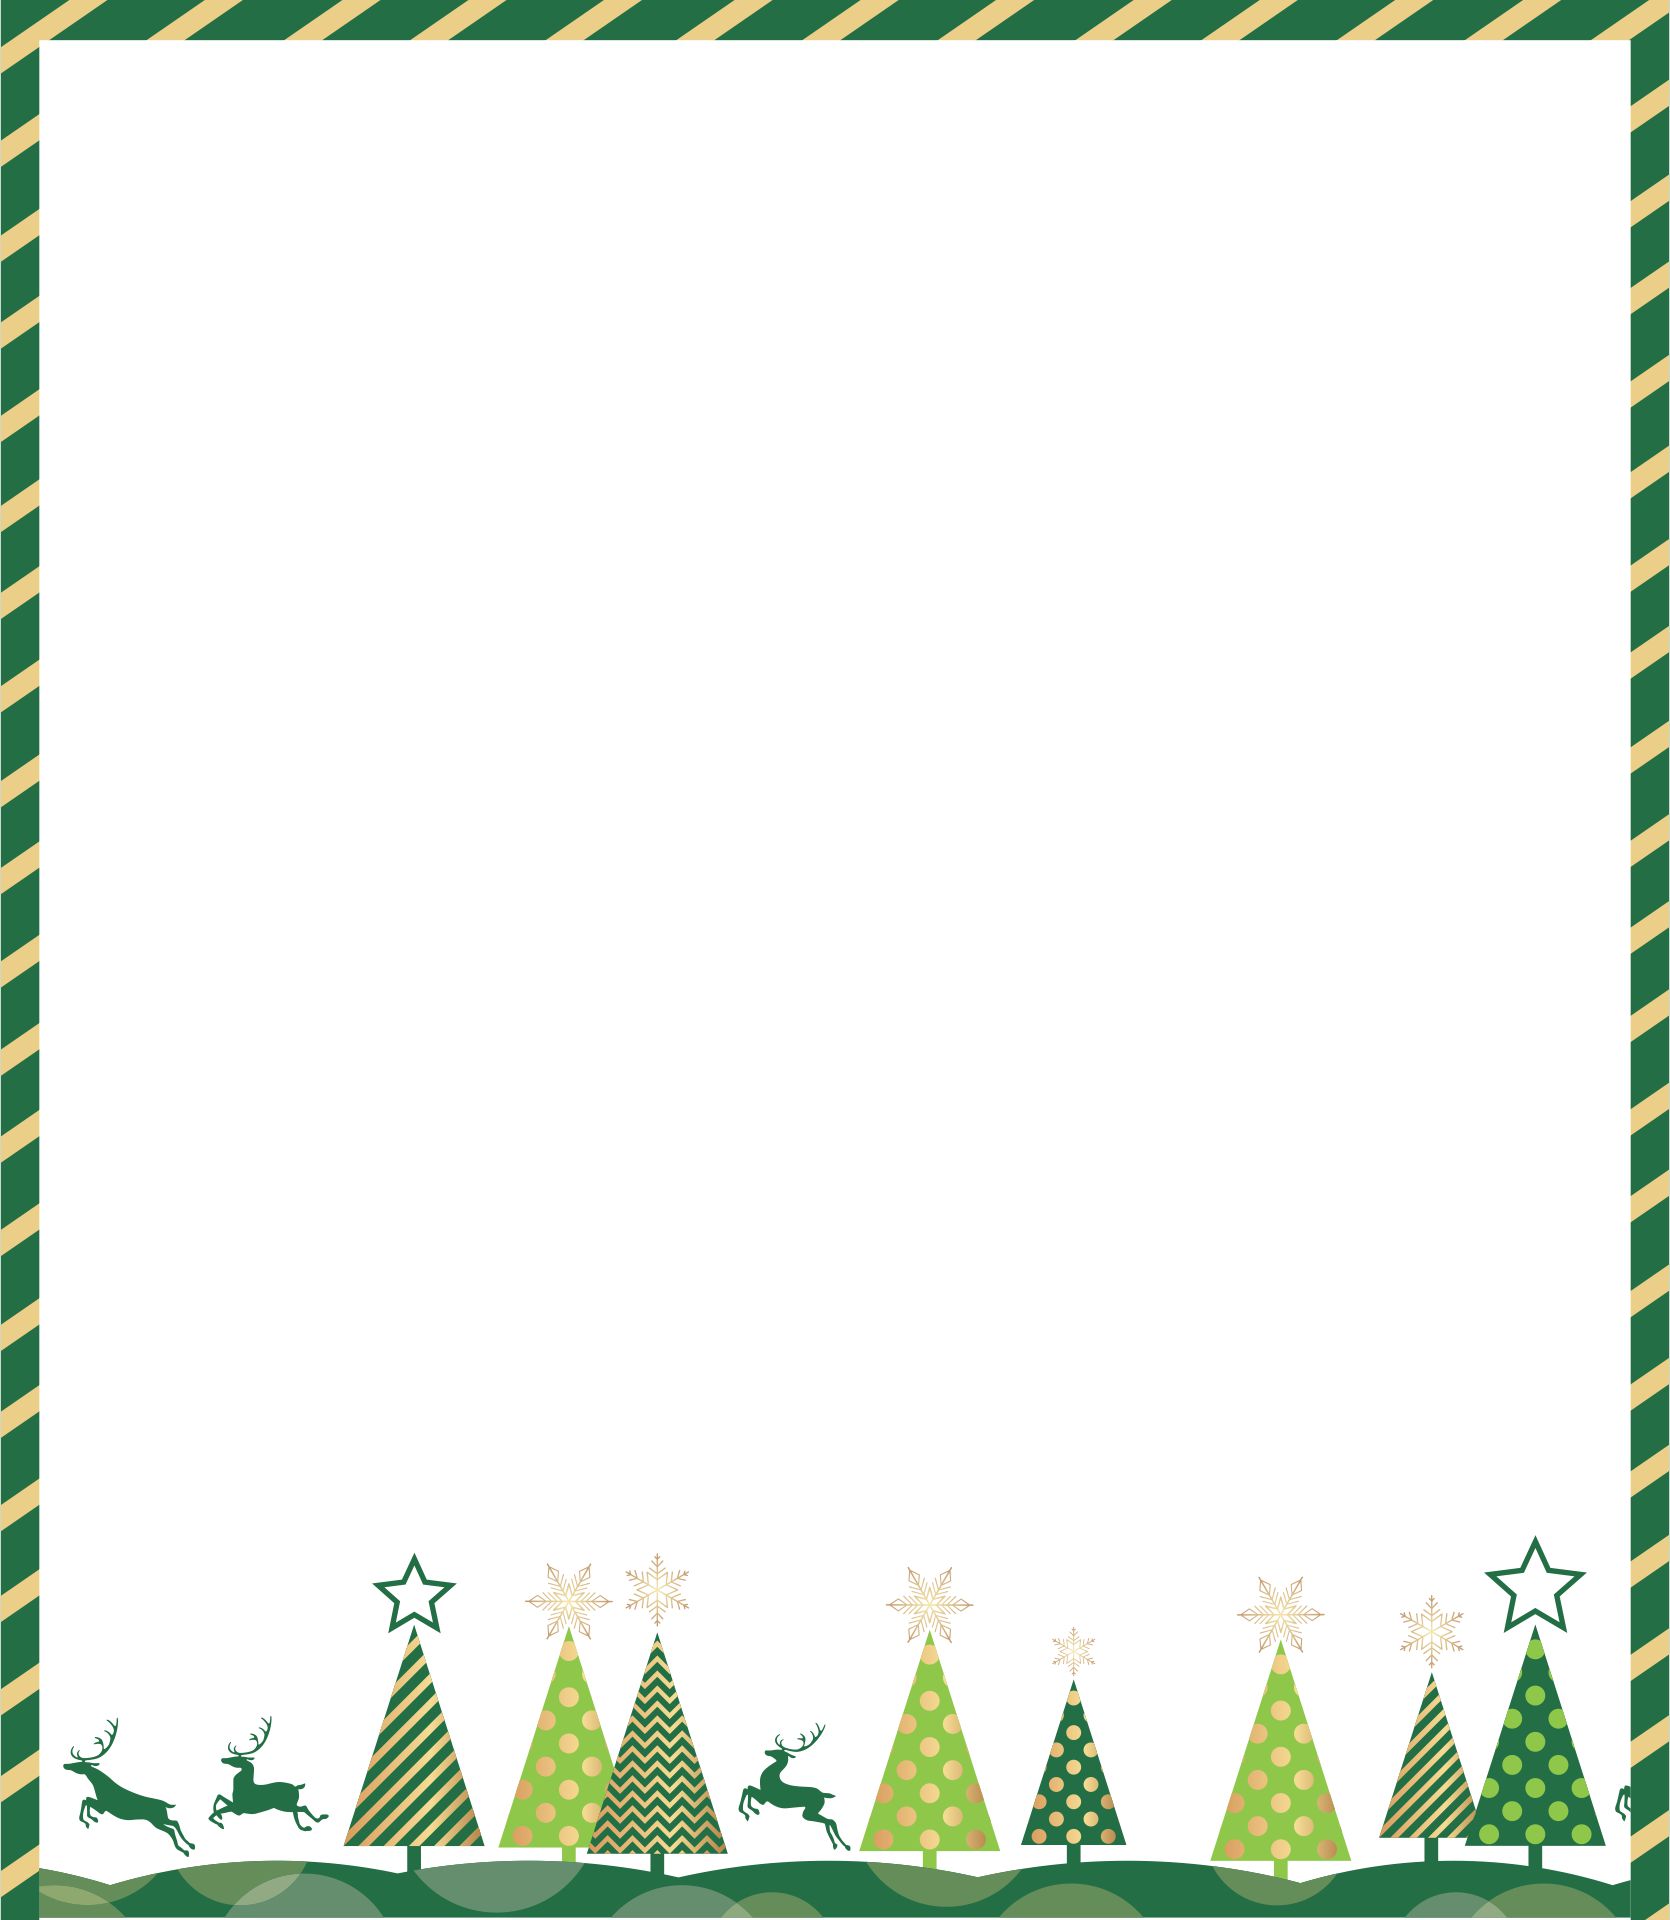  Printable Christmas Borders for Flyers